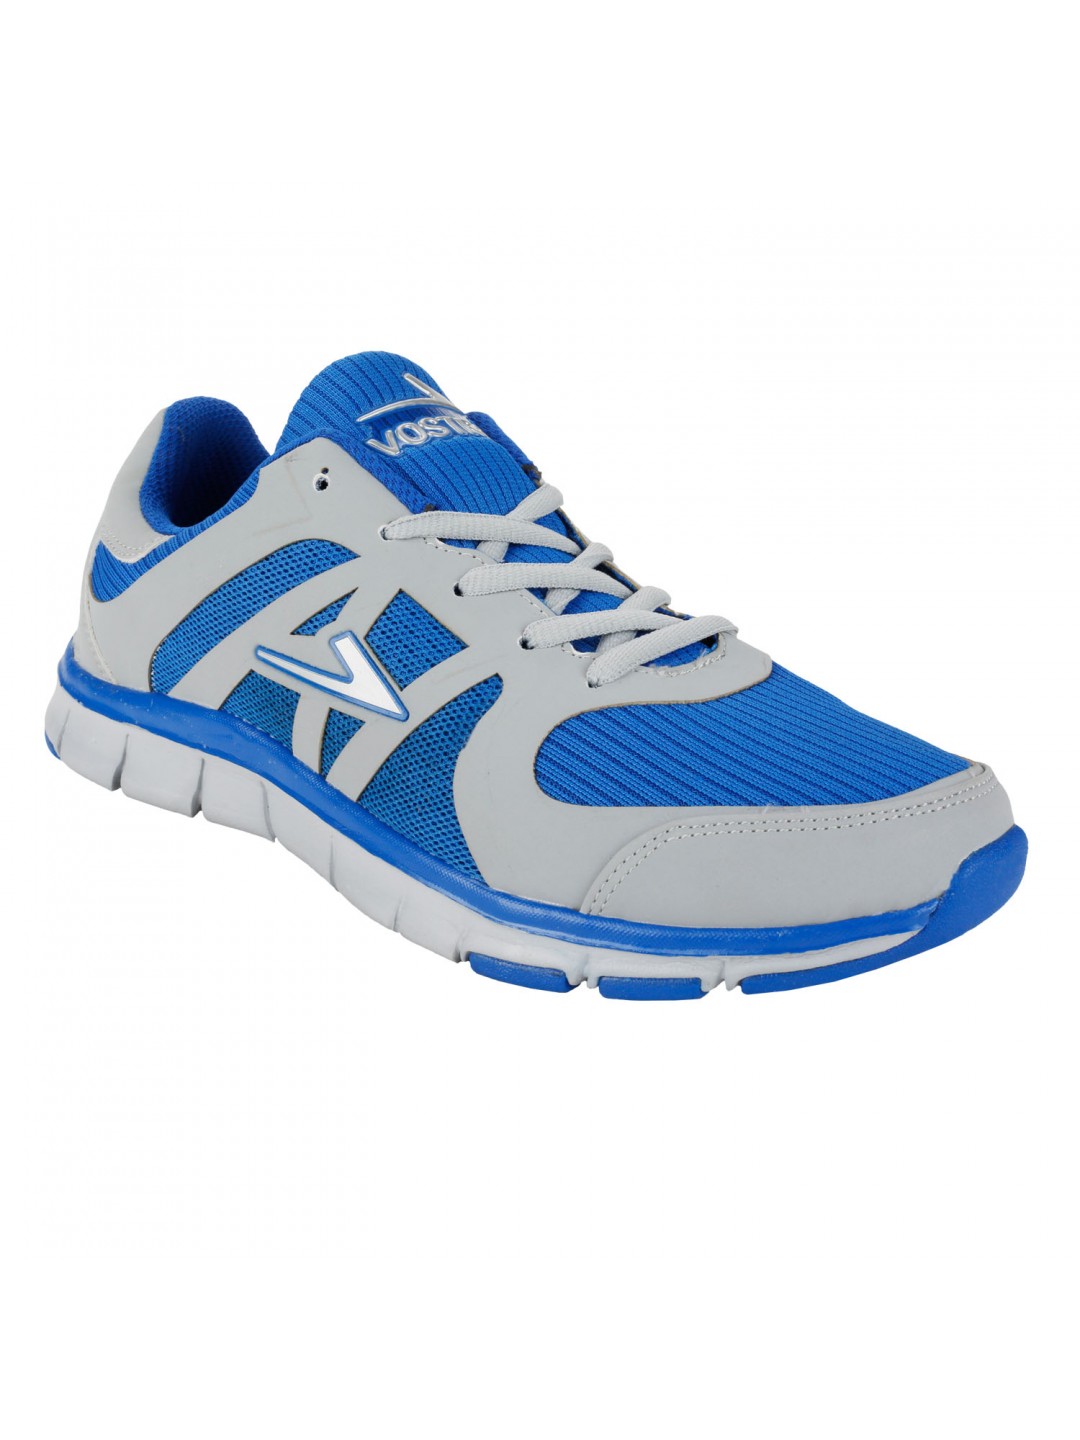 Vostro Grey Blue Sports Shoes for Men - VSS0045